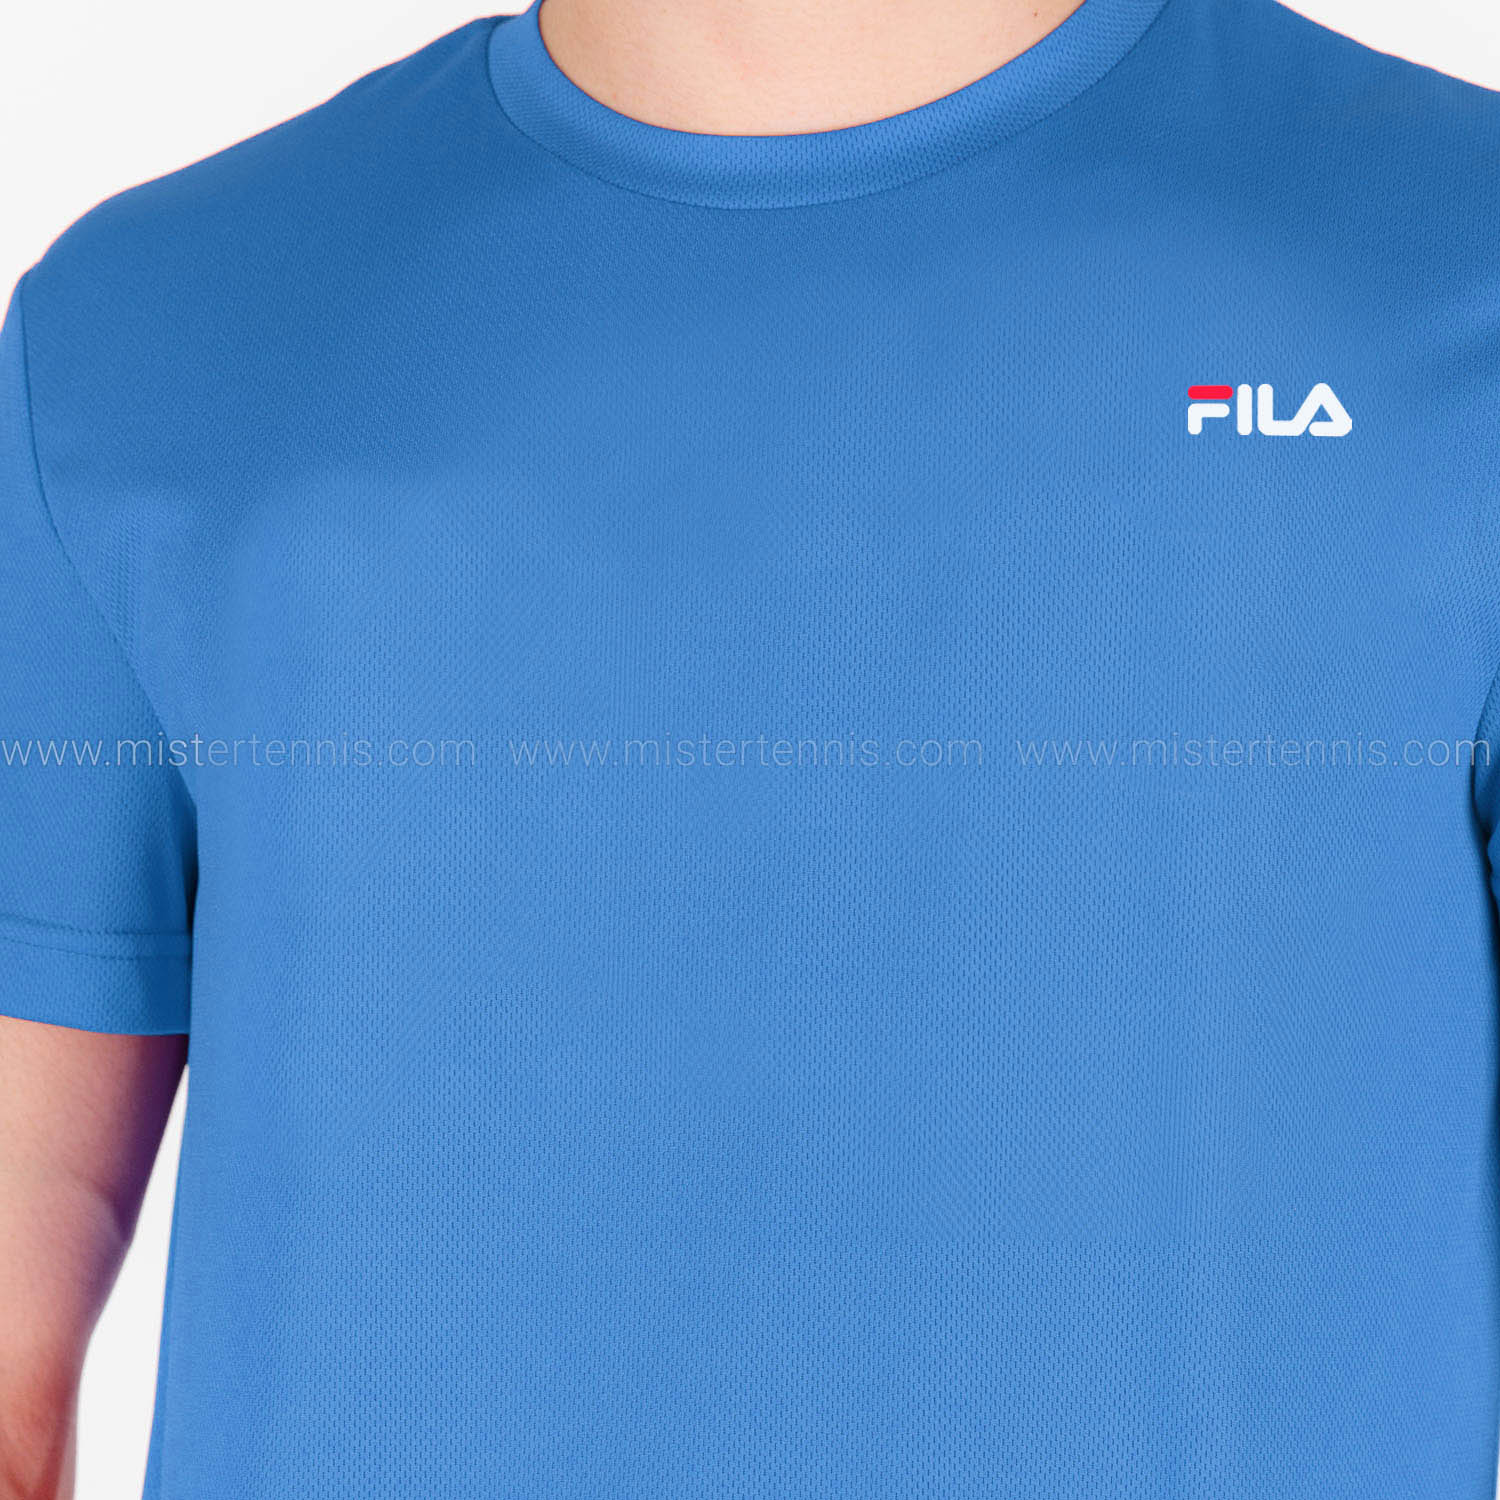 Fila Logo Maglietta - Simply Blue